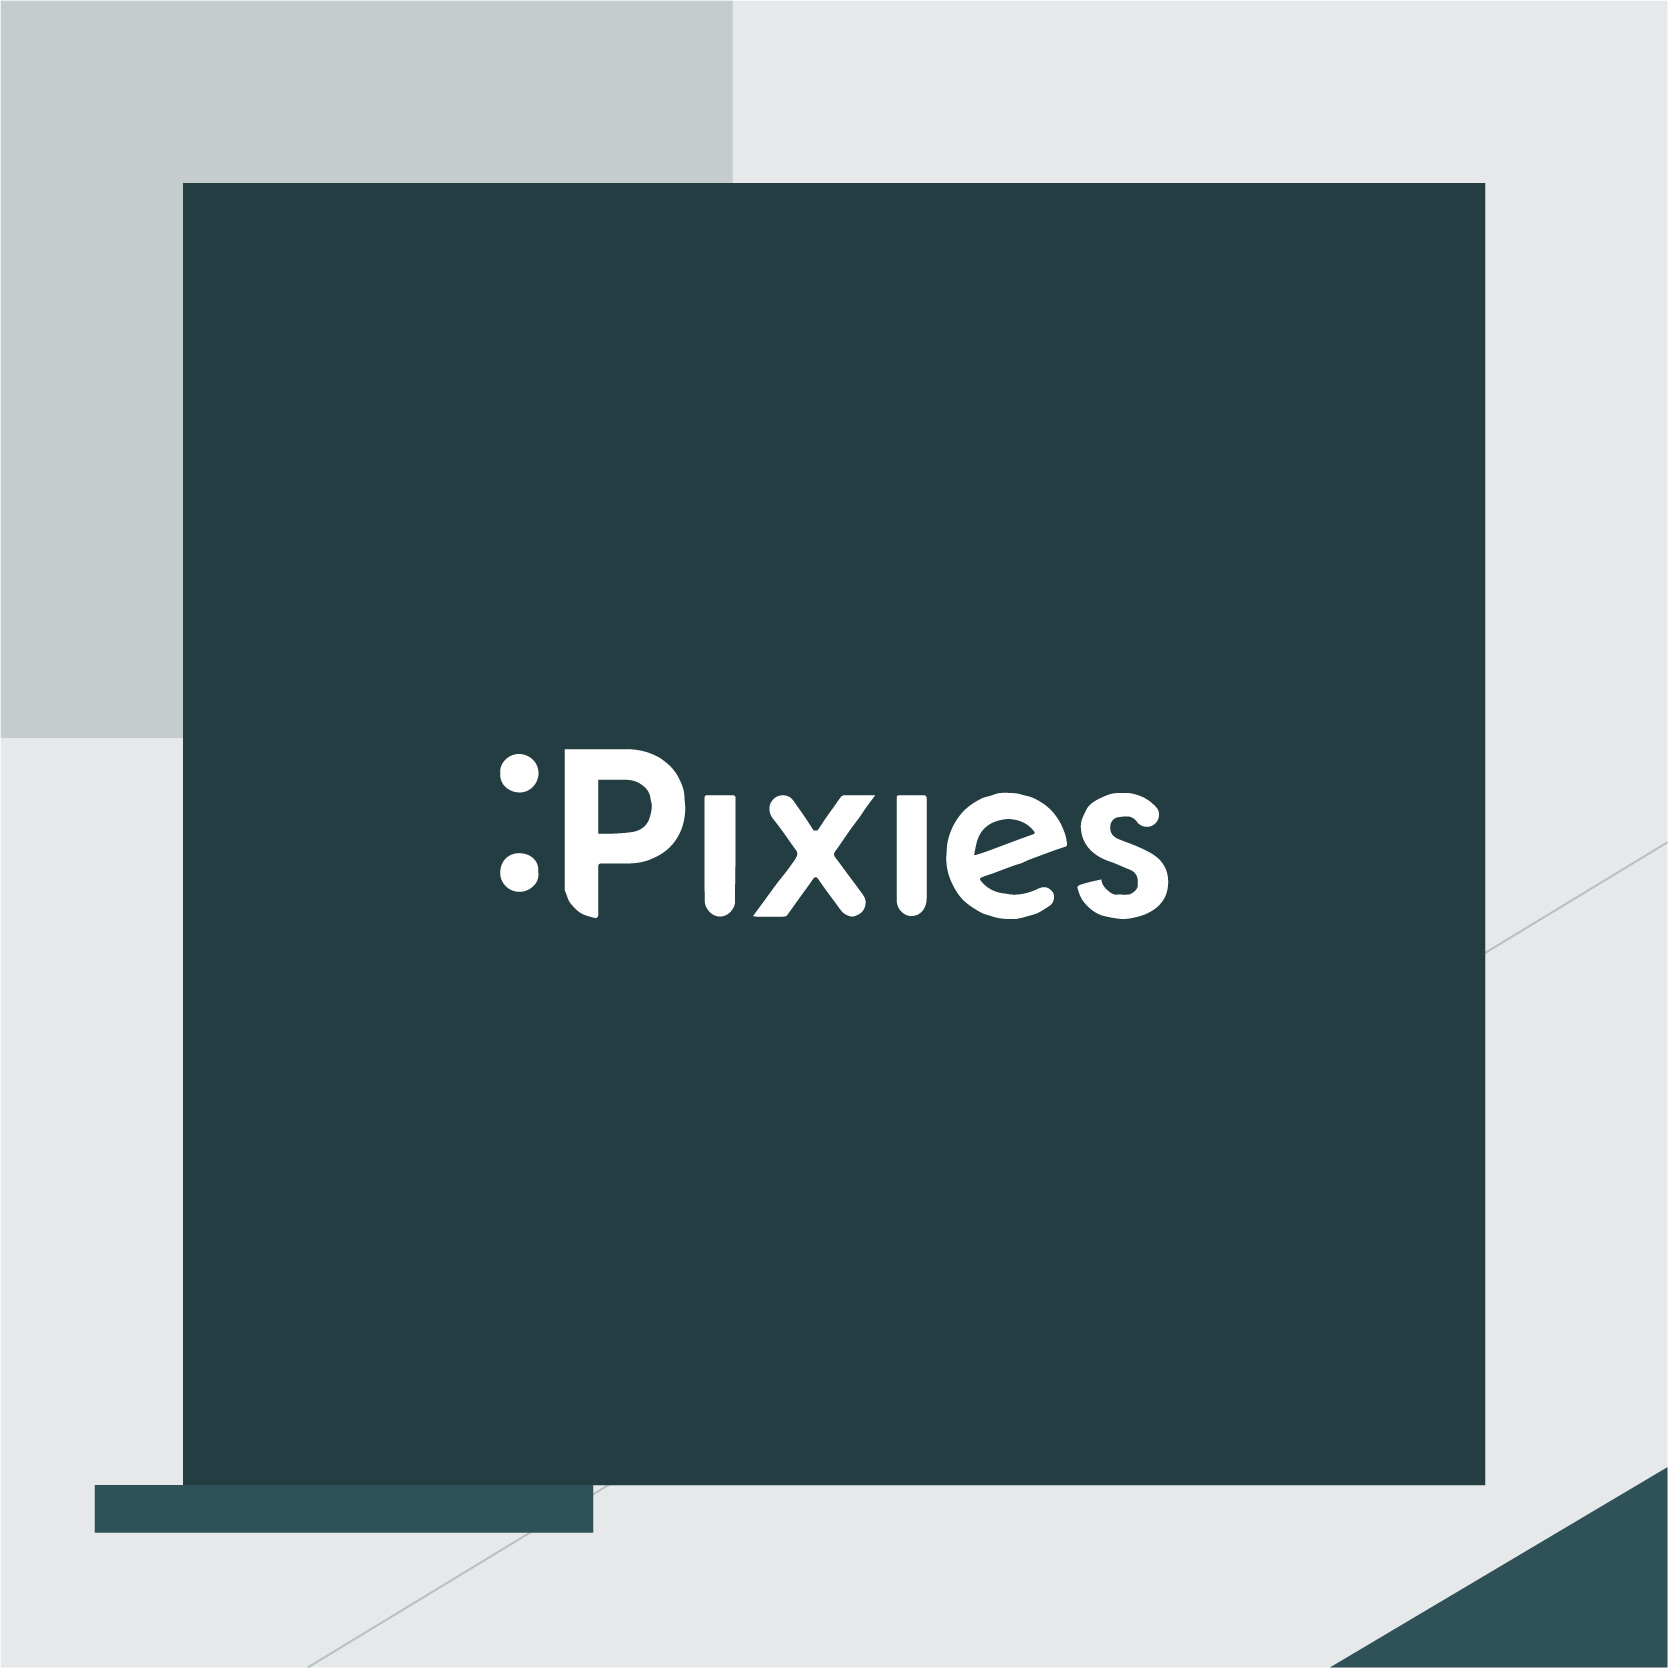 Pixies chiude un round pre-seed da €180K